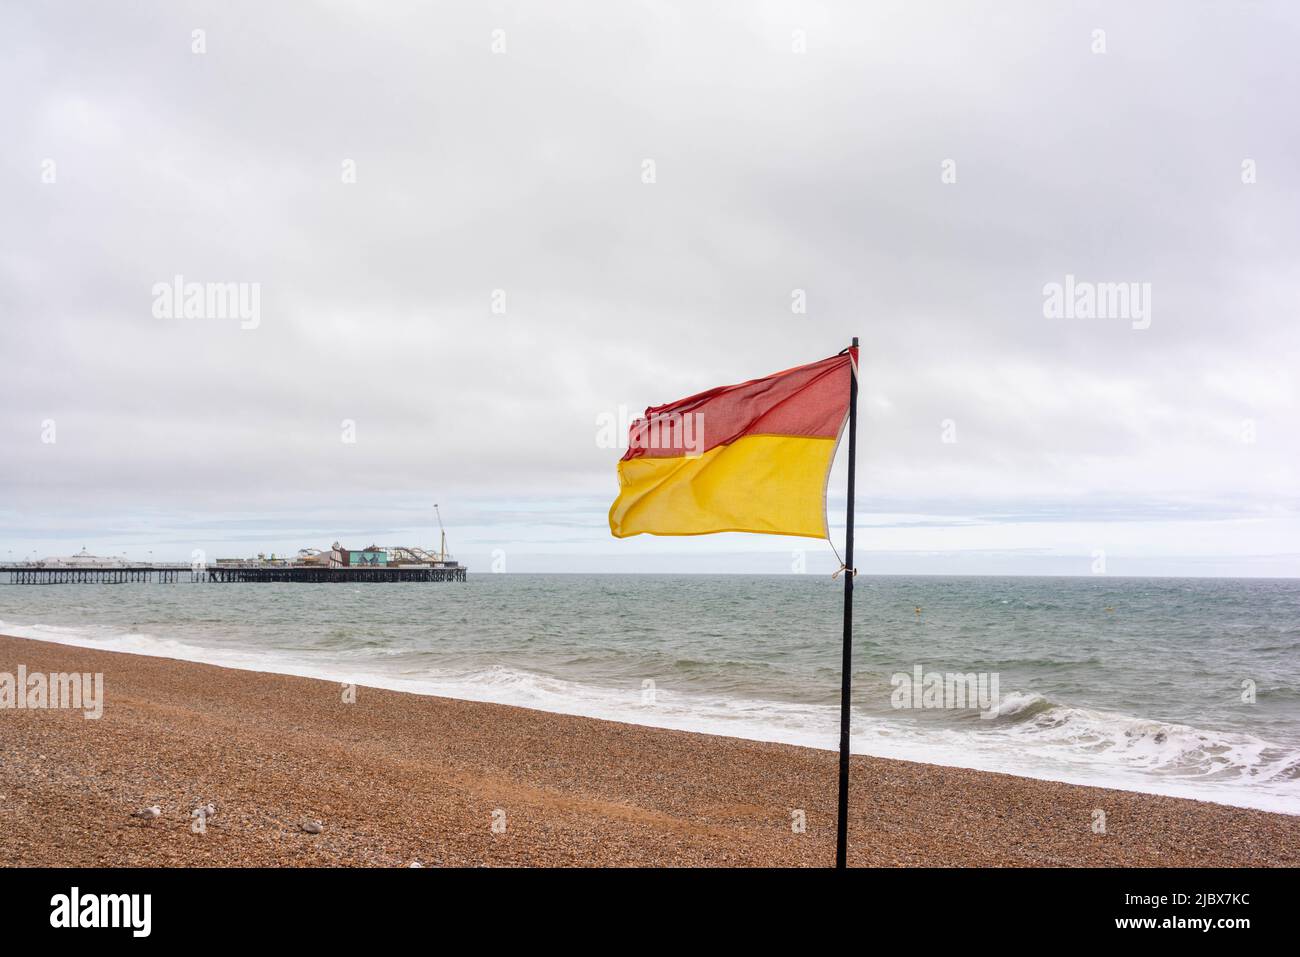 Rote und gelbe Rettungsschwimmer mit Dienstflagge am Brighton Beach mit dem Brighton Pier im Hintergrund an einem bewölkten Tag, East Sussex, England, Großbritannien Stockfoto